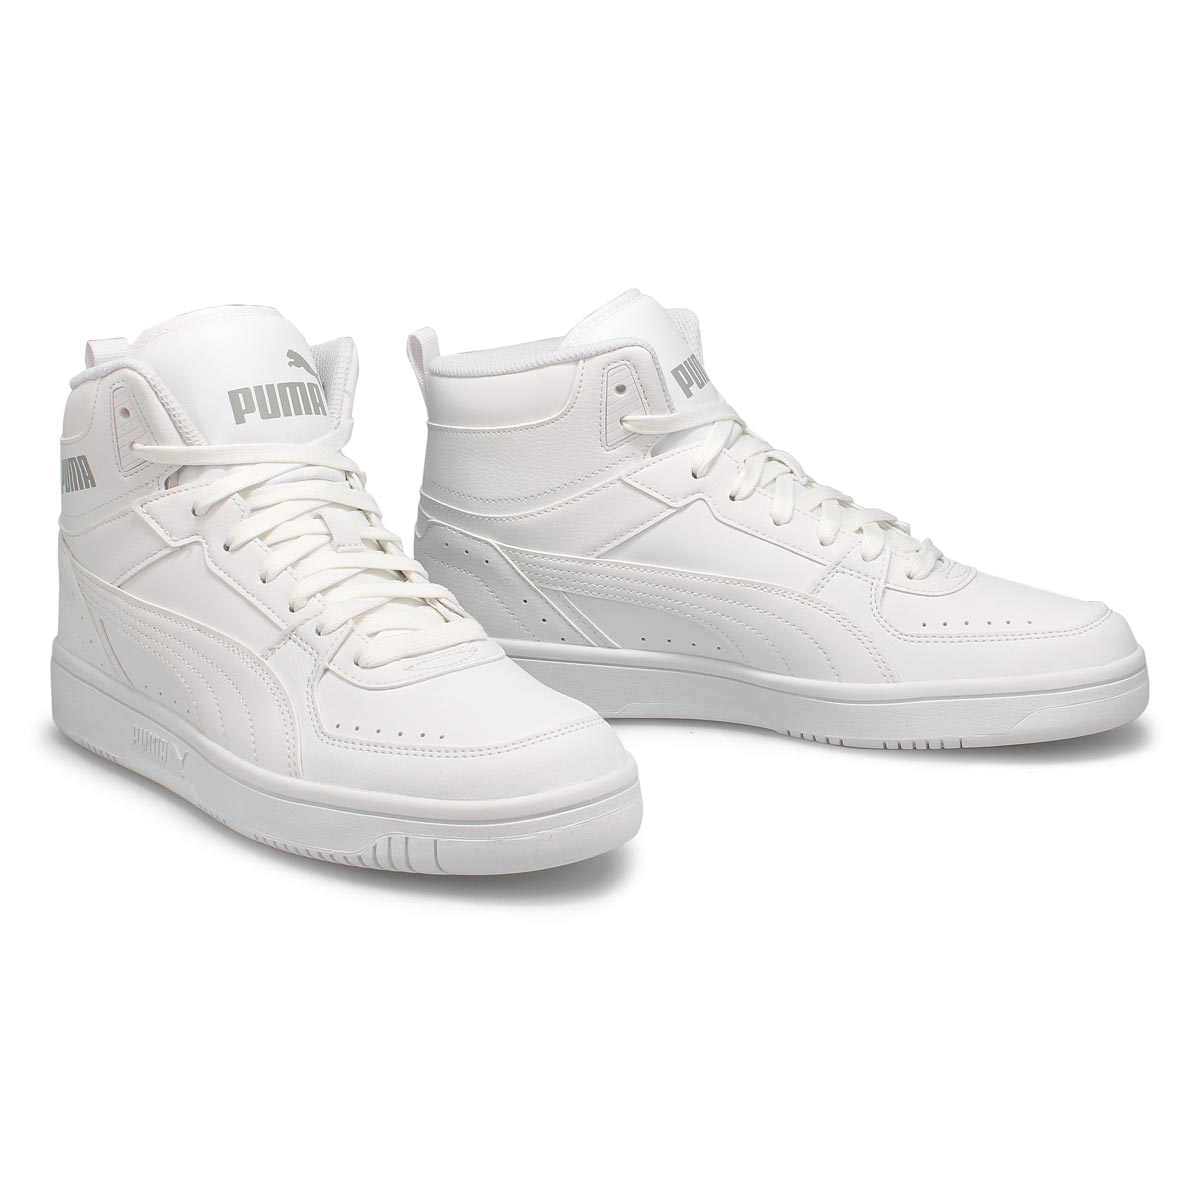 Men's Rebound Joy Sneaker - Limestone White